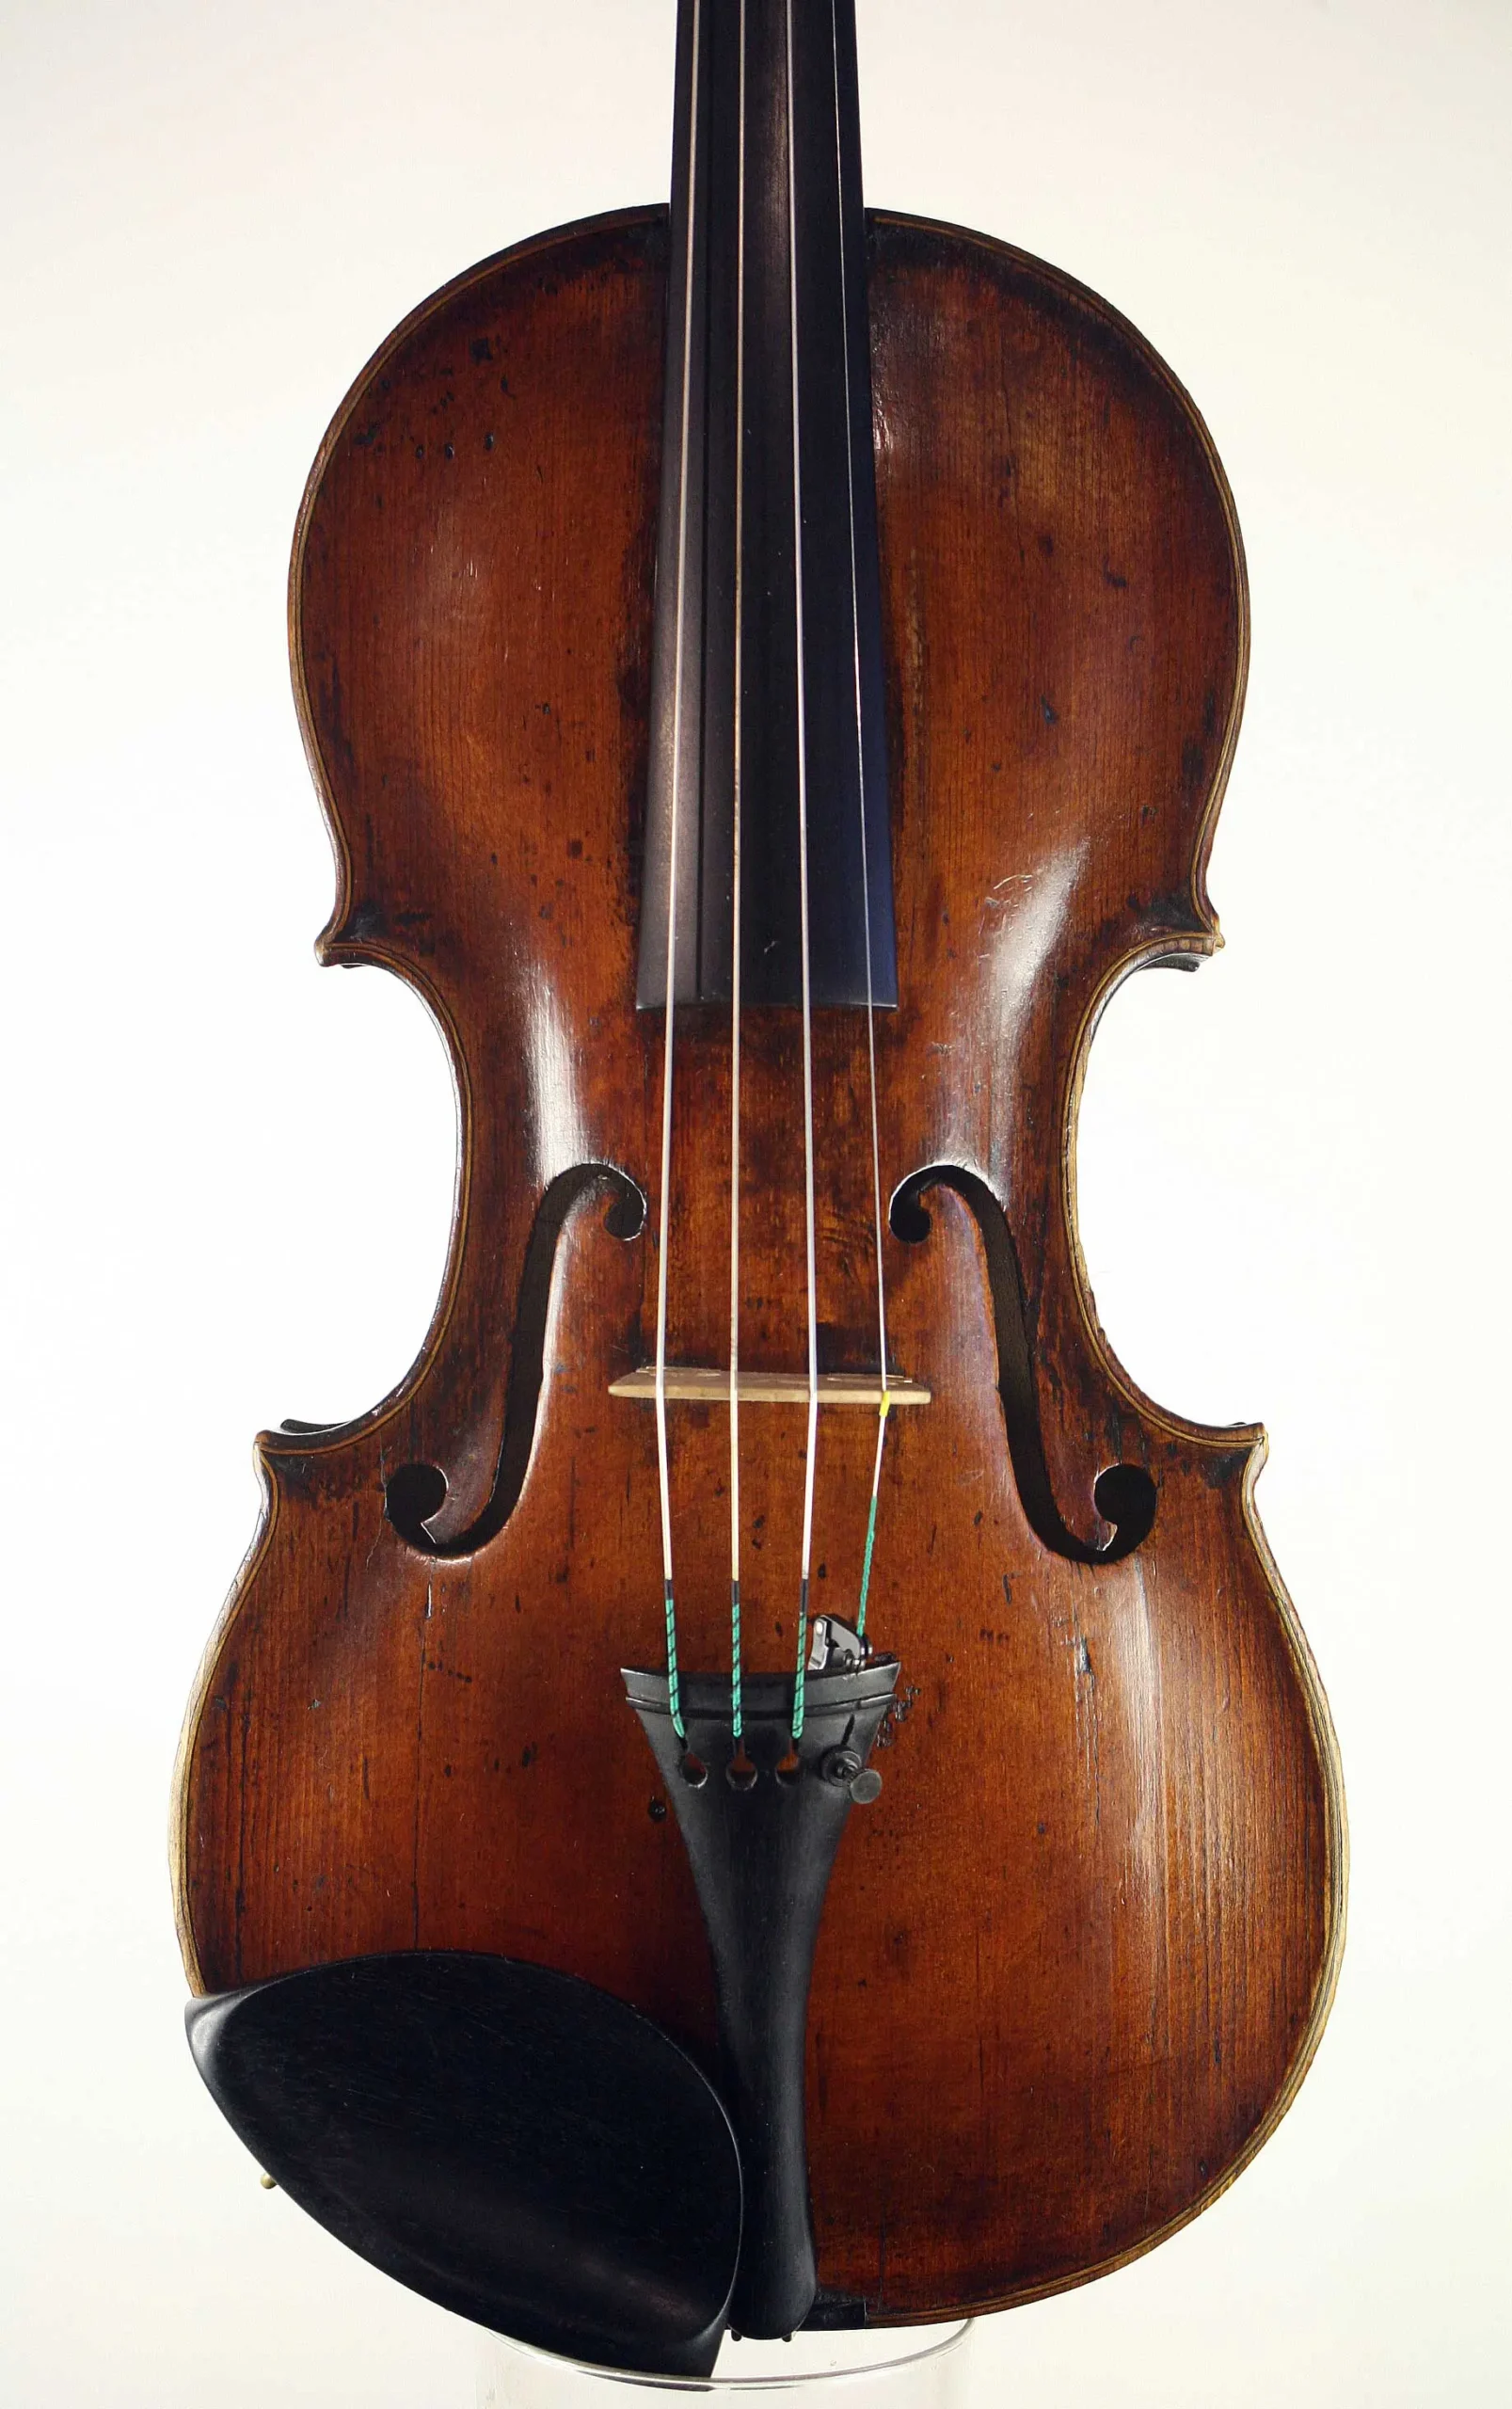 schonbach violin - Are Schoenbach violins good